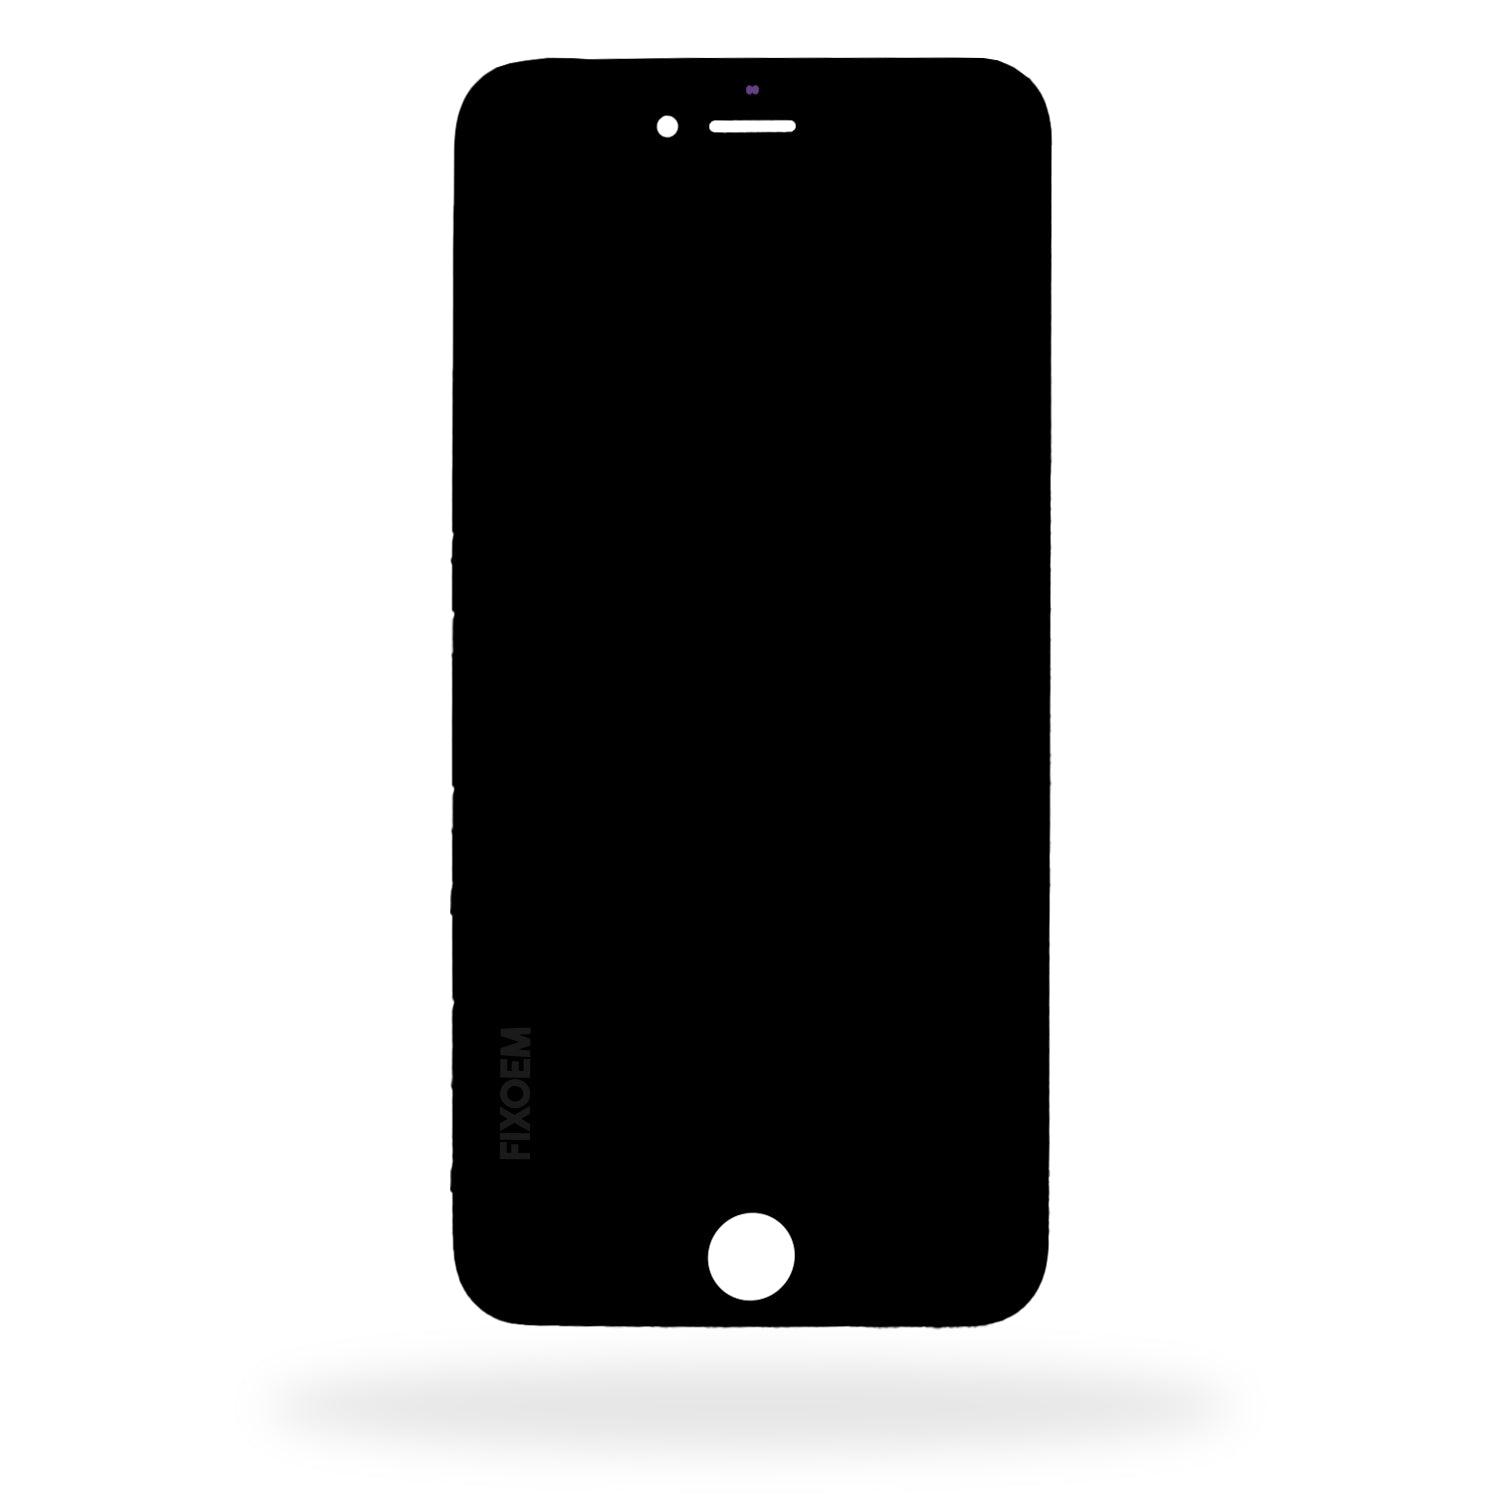 Display Iphone 6 Plus A1522 A1524. a solo $ 660.00 Refaccion y puestos celulares, refurbish y microelectronica.- FixOEM